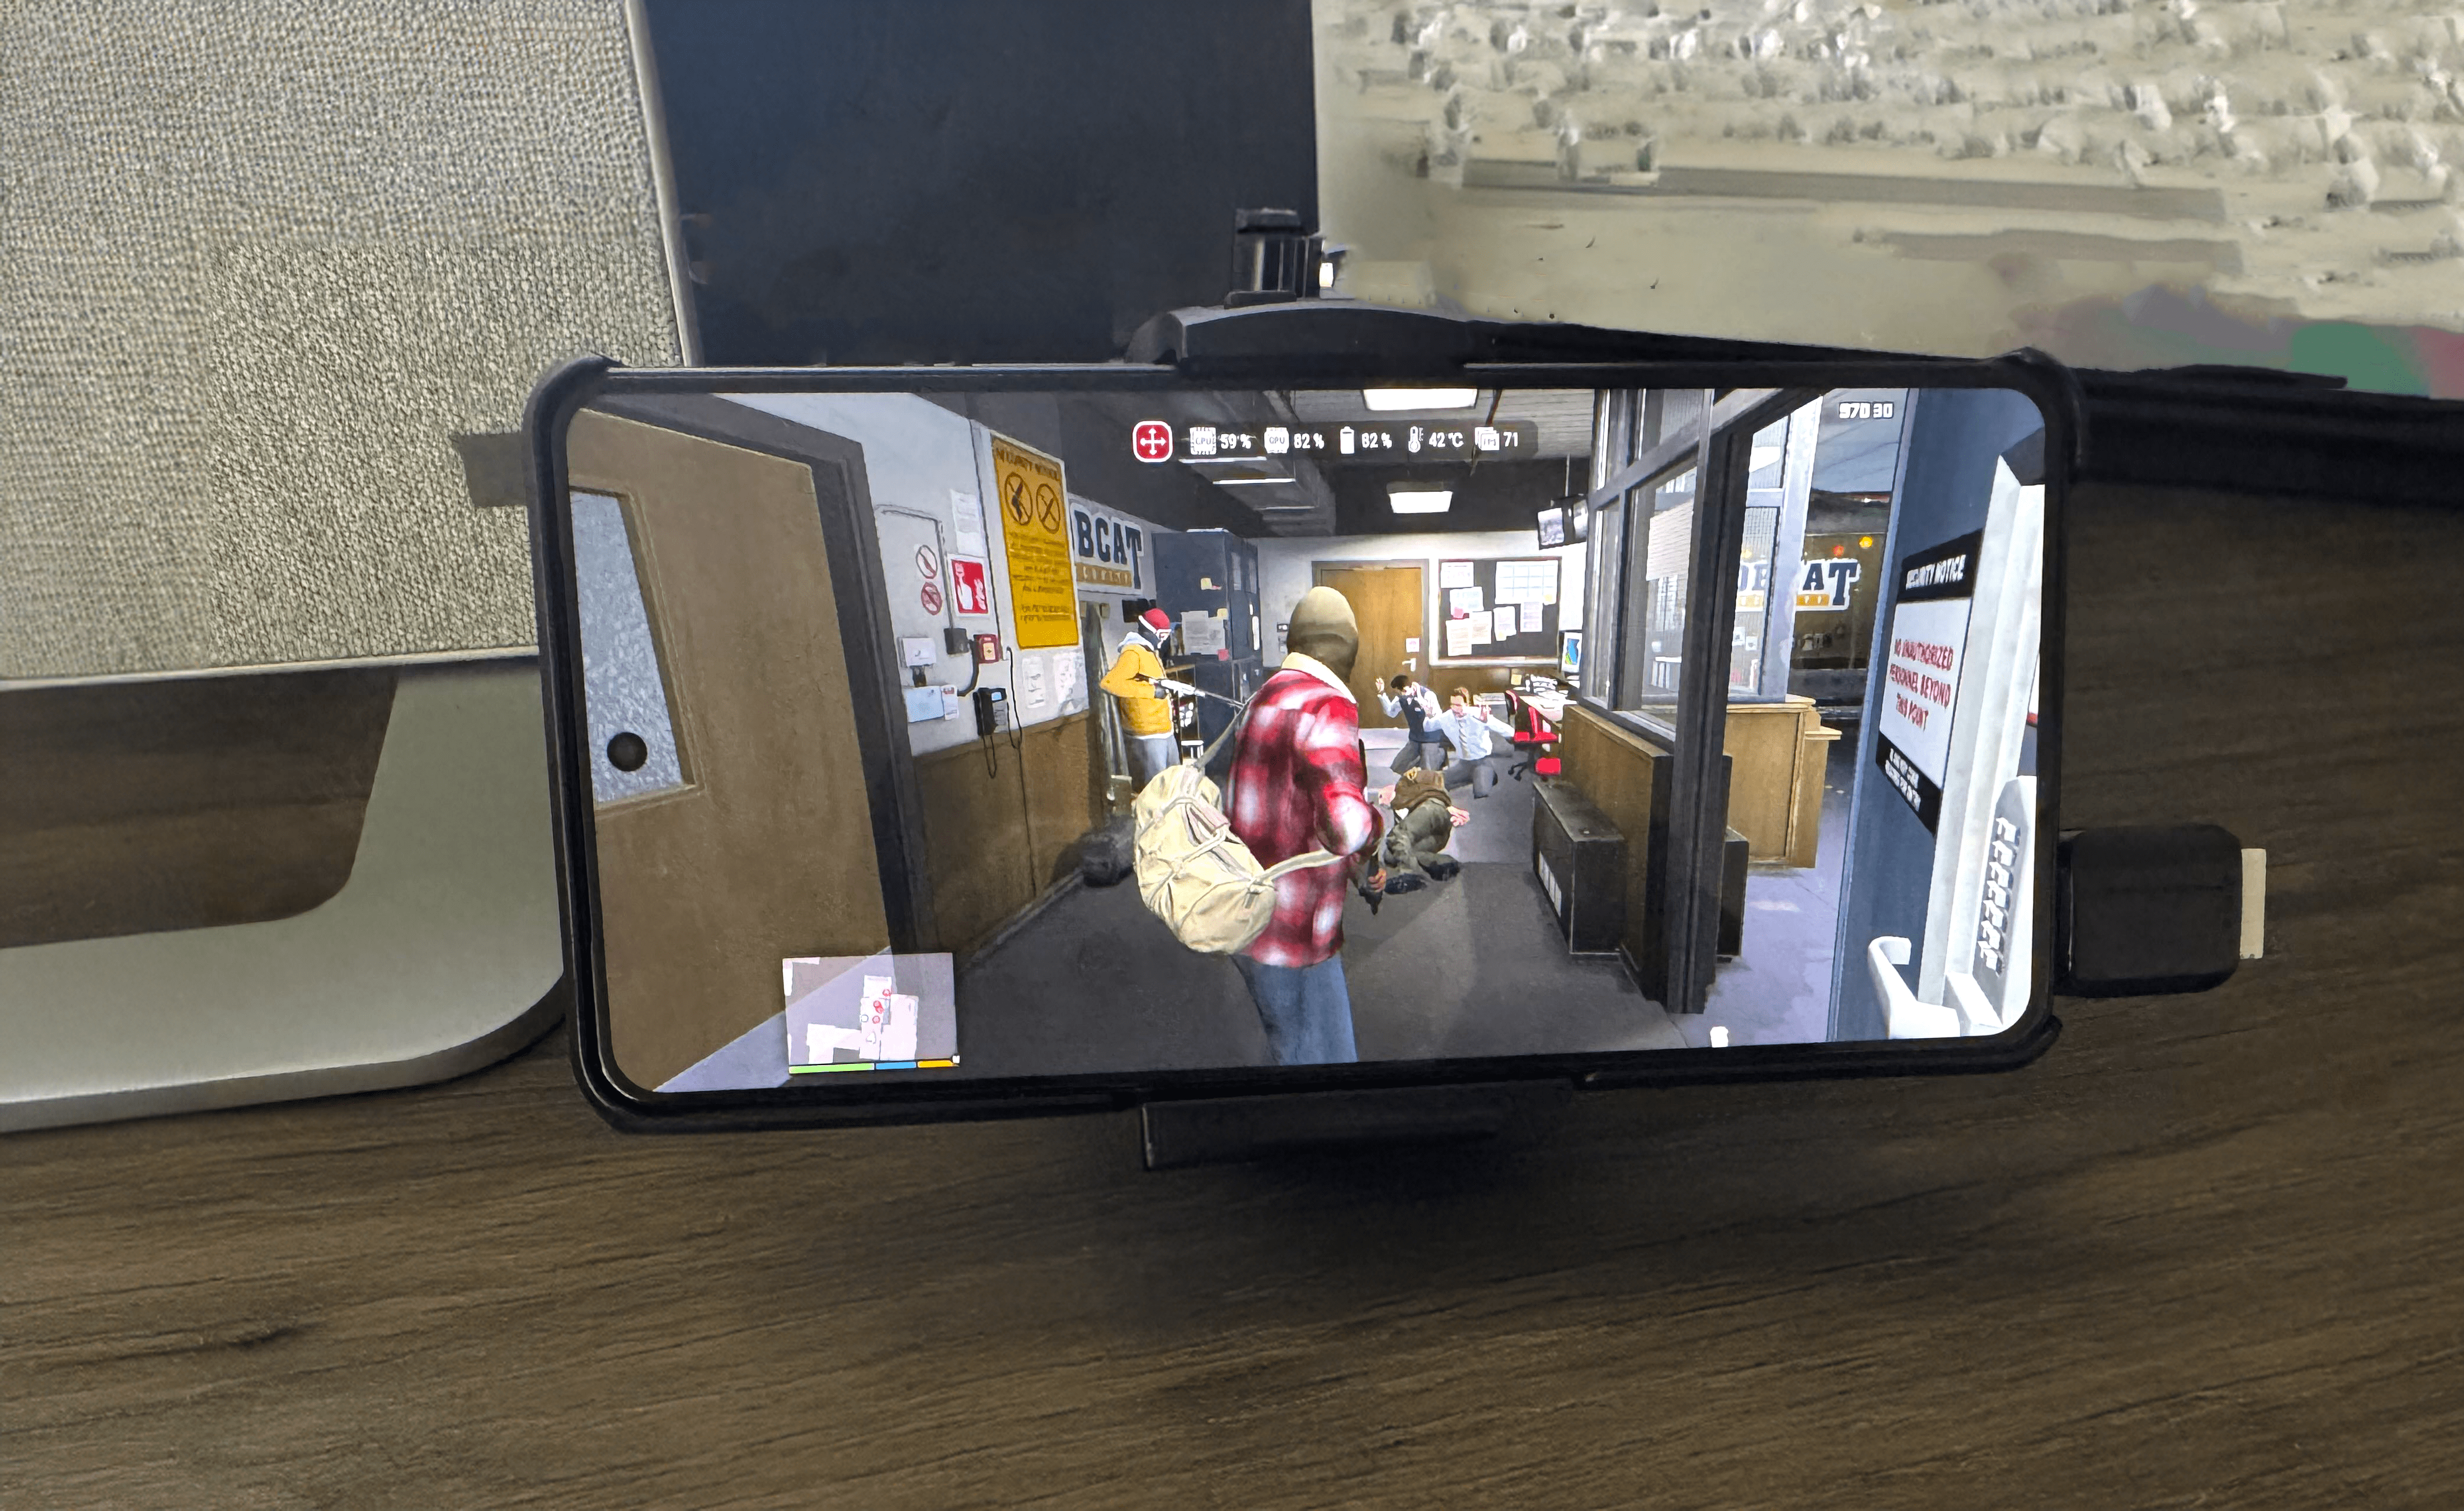 Smartfon wyświetlający grę wideo, na biurku z monitorem i klawiaturą w tle.